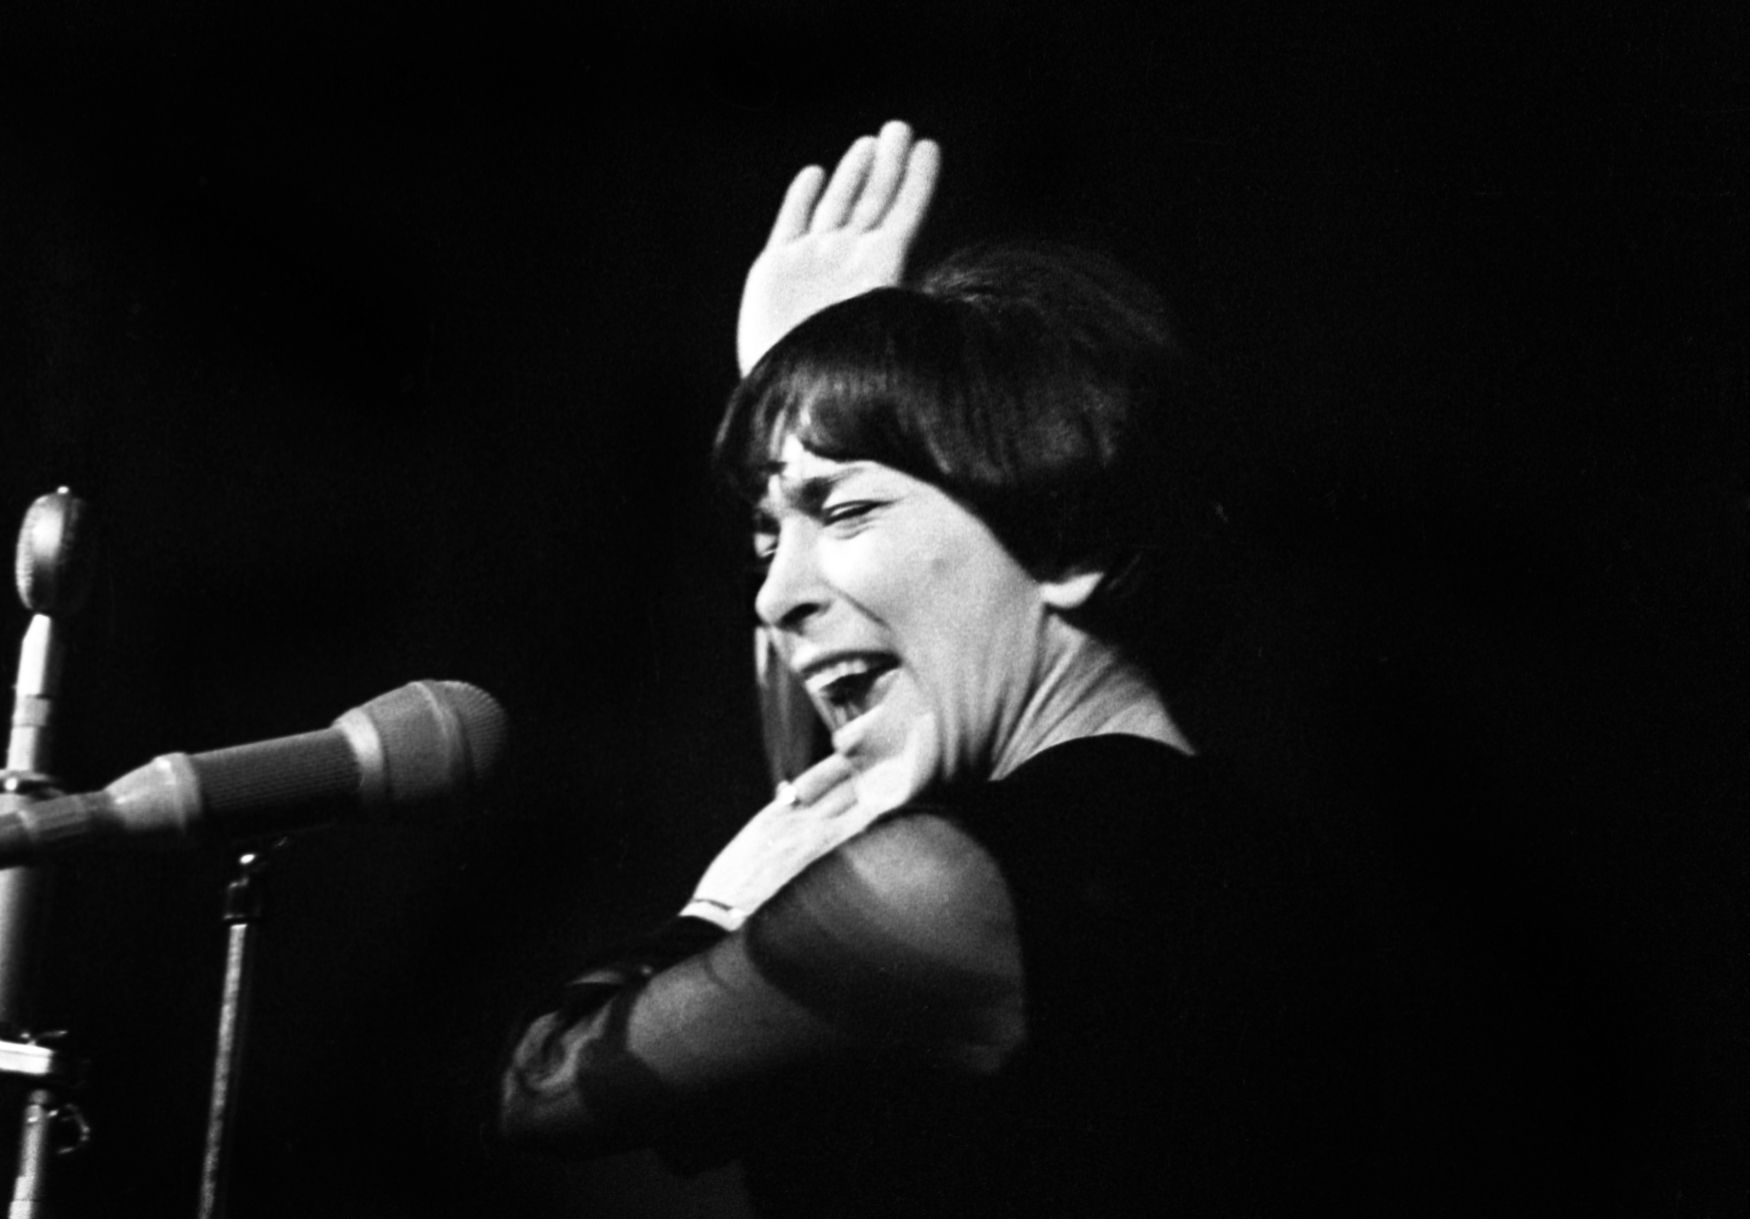 Hana Hegerová, 1972